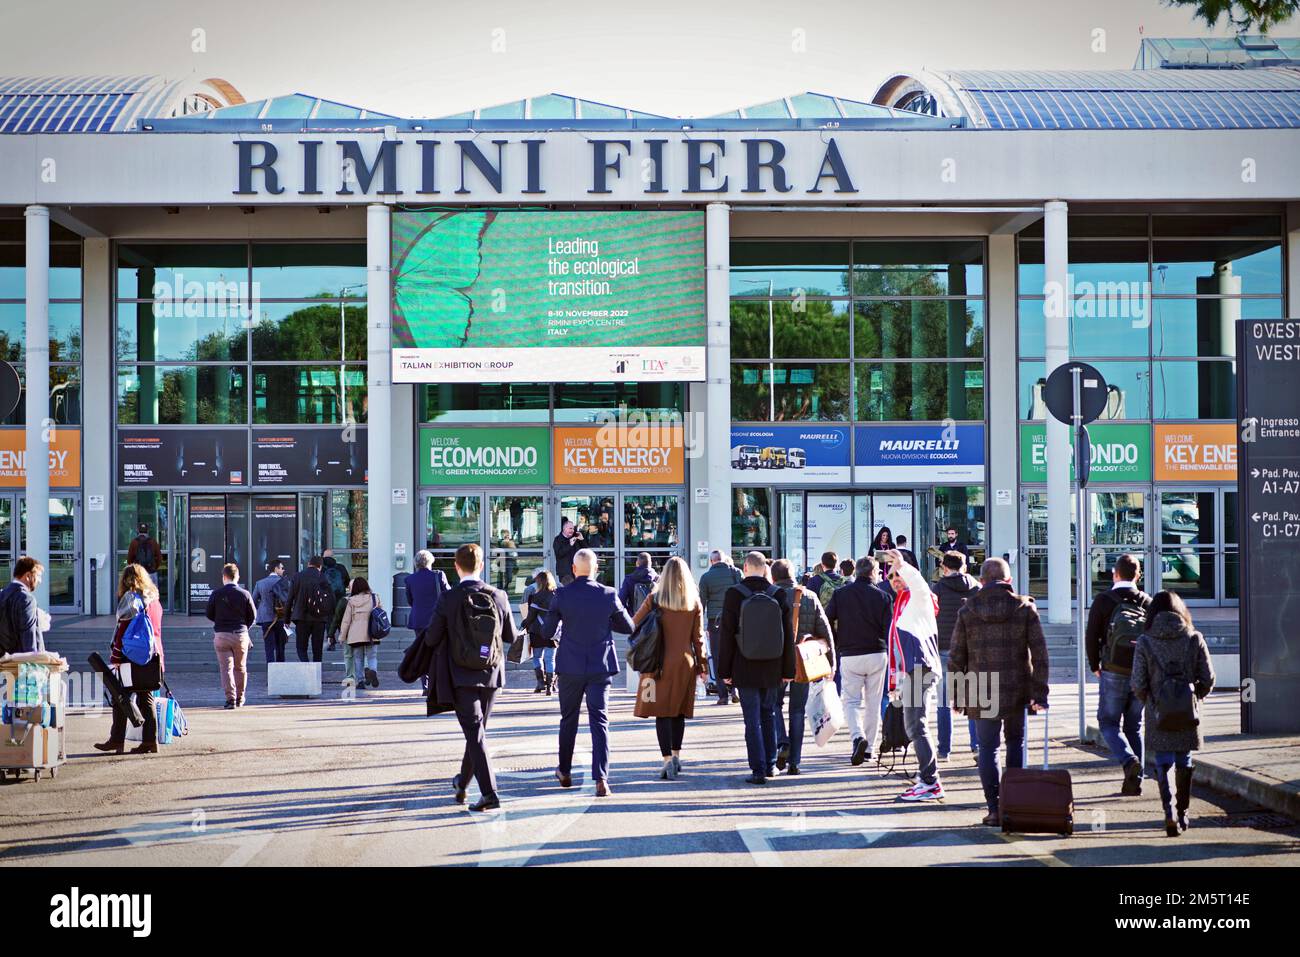 Les gens à l'entrée de Rimini Fiera, pendant Ecomondo le salon pour la transition écologique et les nouveaux modèles de l'économie circulaire. Rimini, Italie - N Banque D'Images